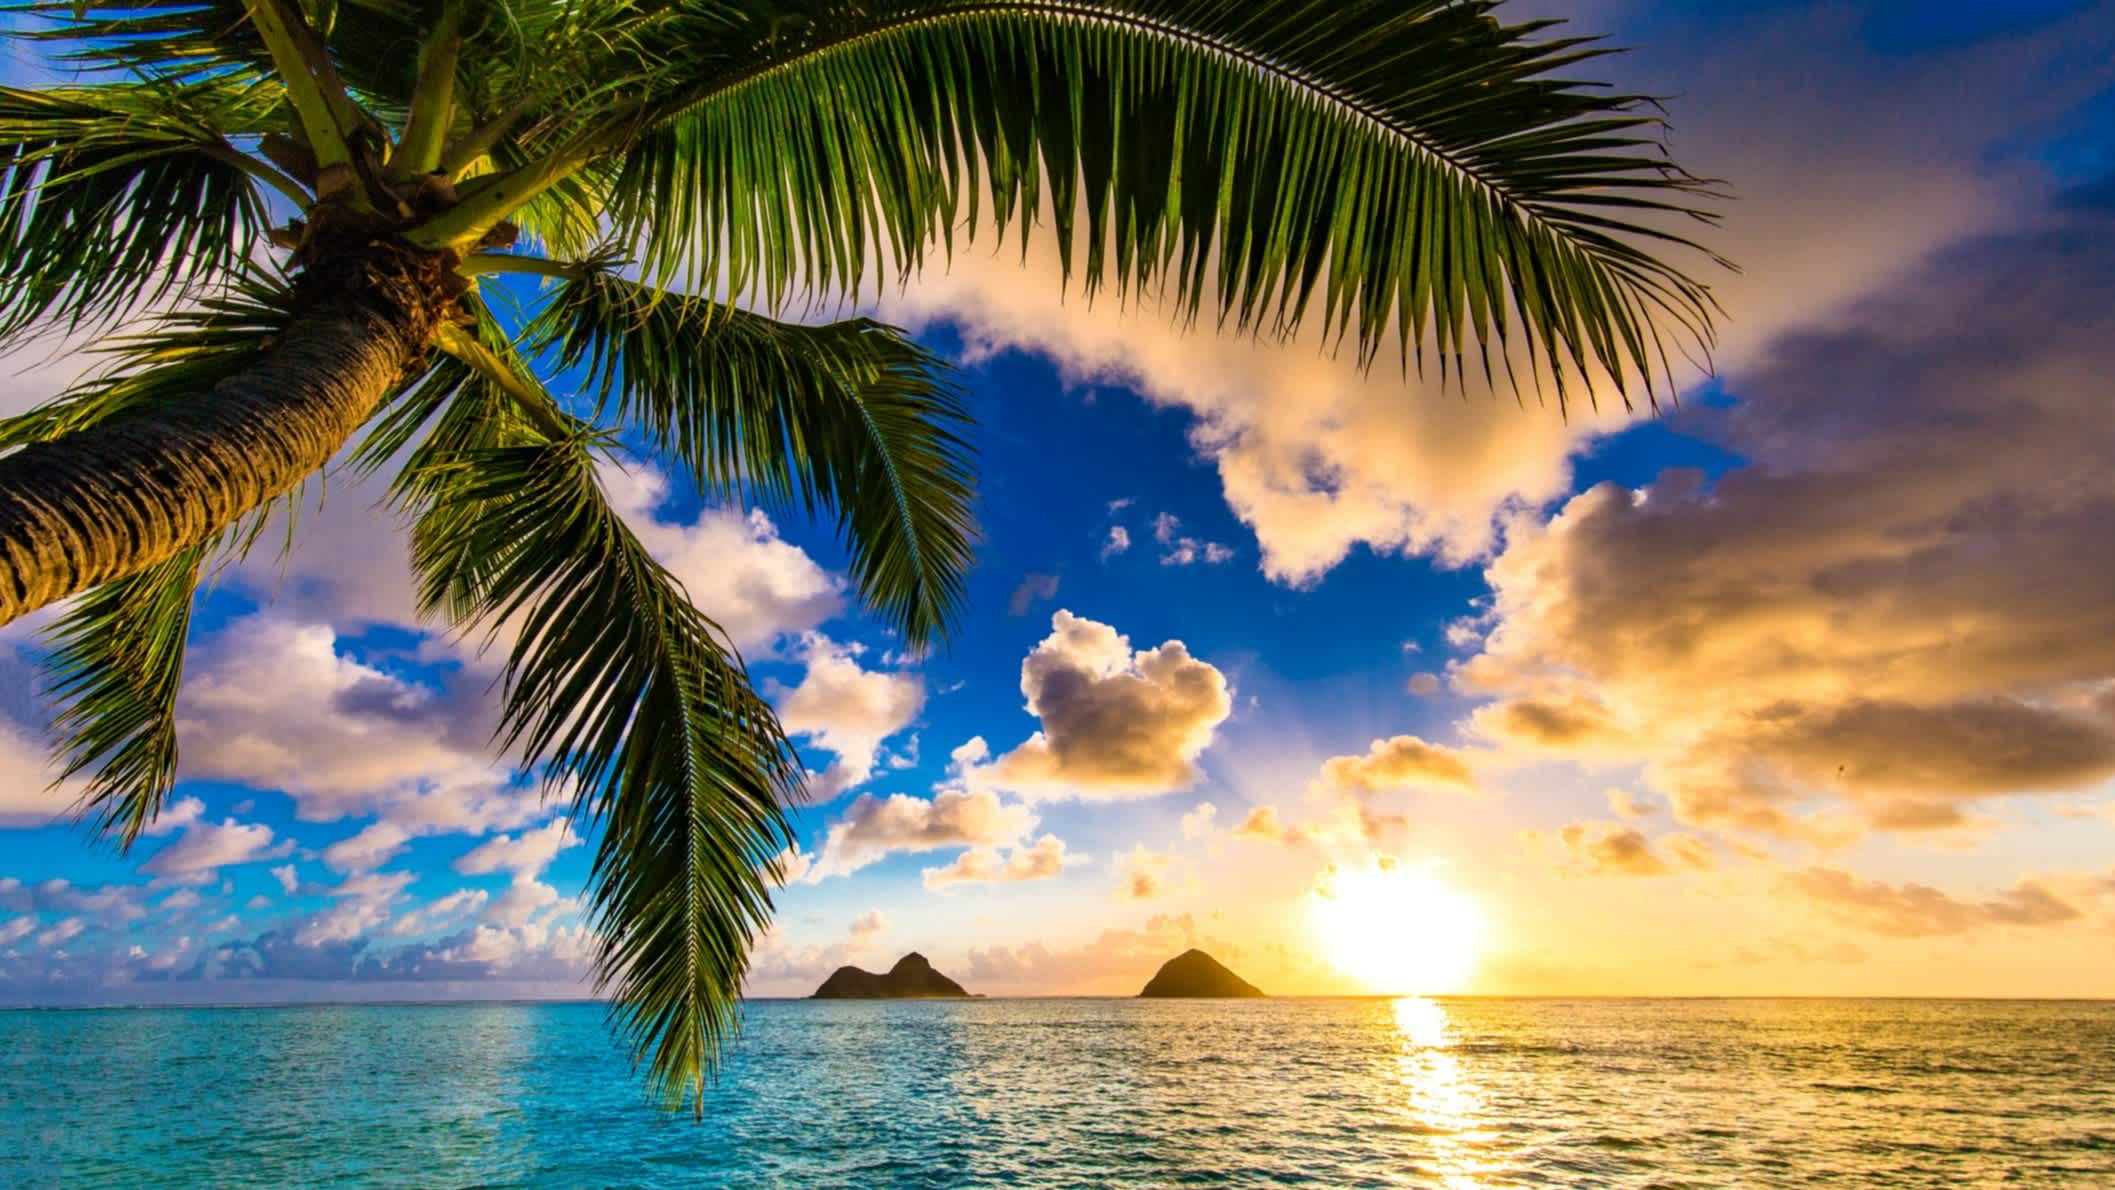 Der Stand Lanikai Beach, Oahu, Hawaii , USA bei Sonnendämmerung und mit Blick auf das Meer sowie vorgelagerten Inseln und einer Palme im Bild.